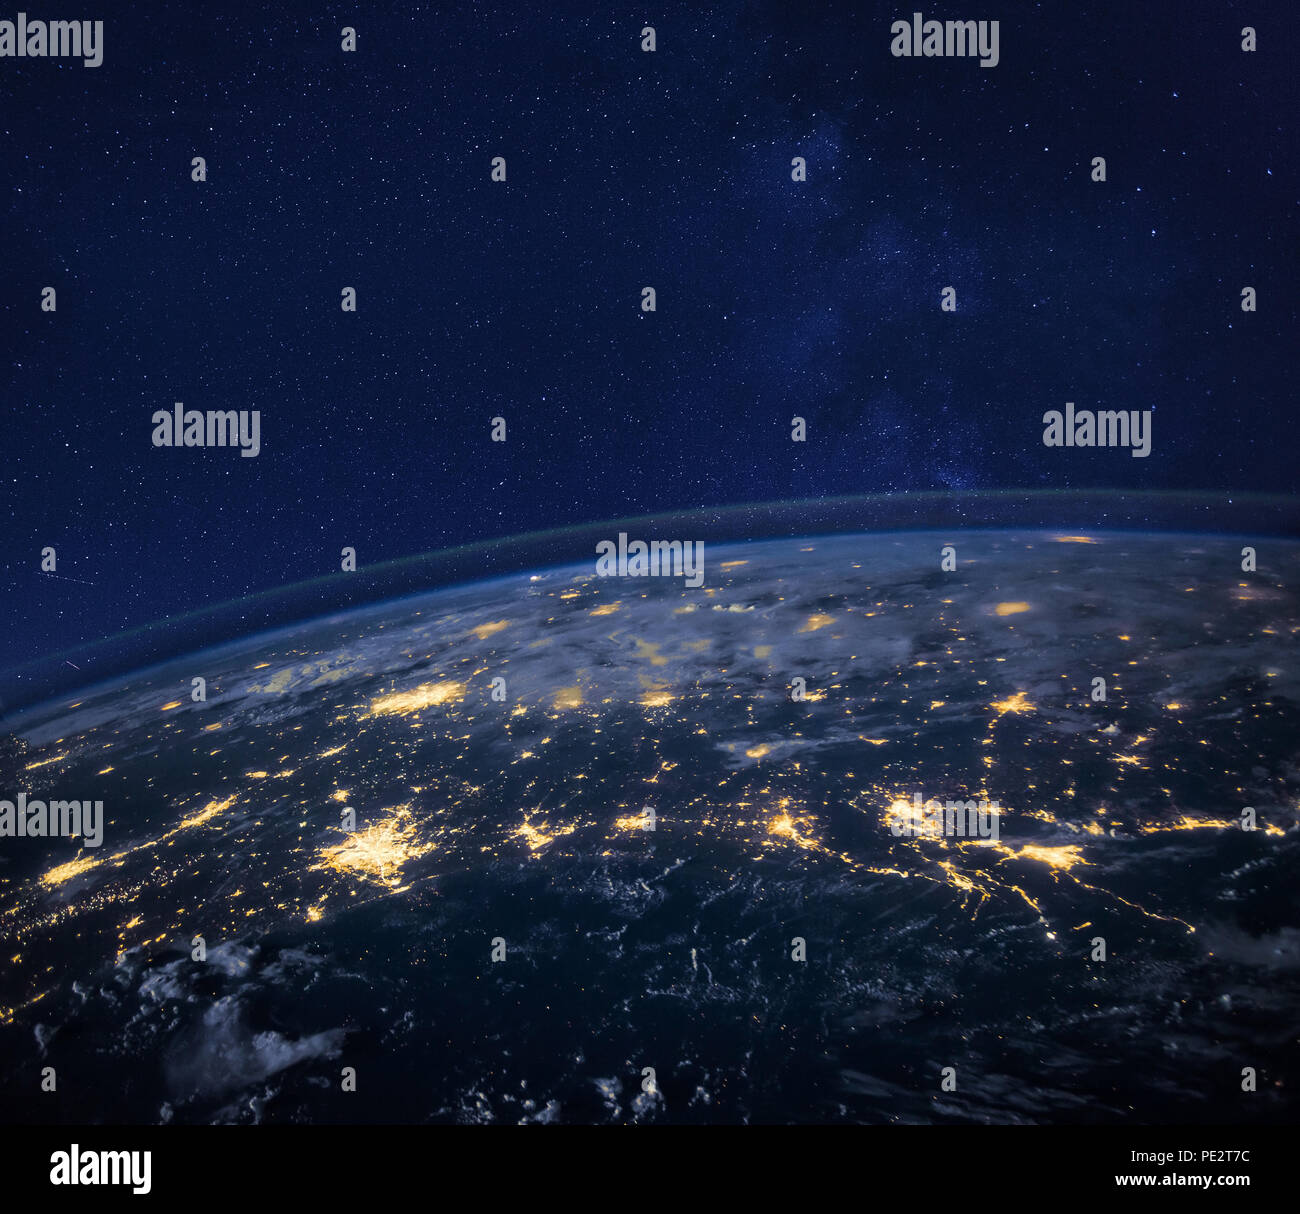 Vista nocturna del planeta Tierra desde el espacio, hermoso fondo con luces y estrellas, de cerca, la imagen original proporcionado por la NASA. Foto de stock